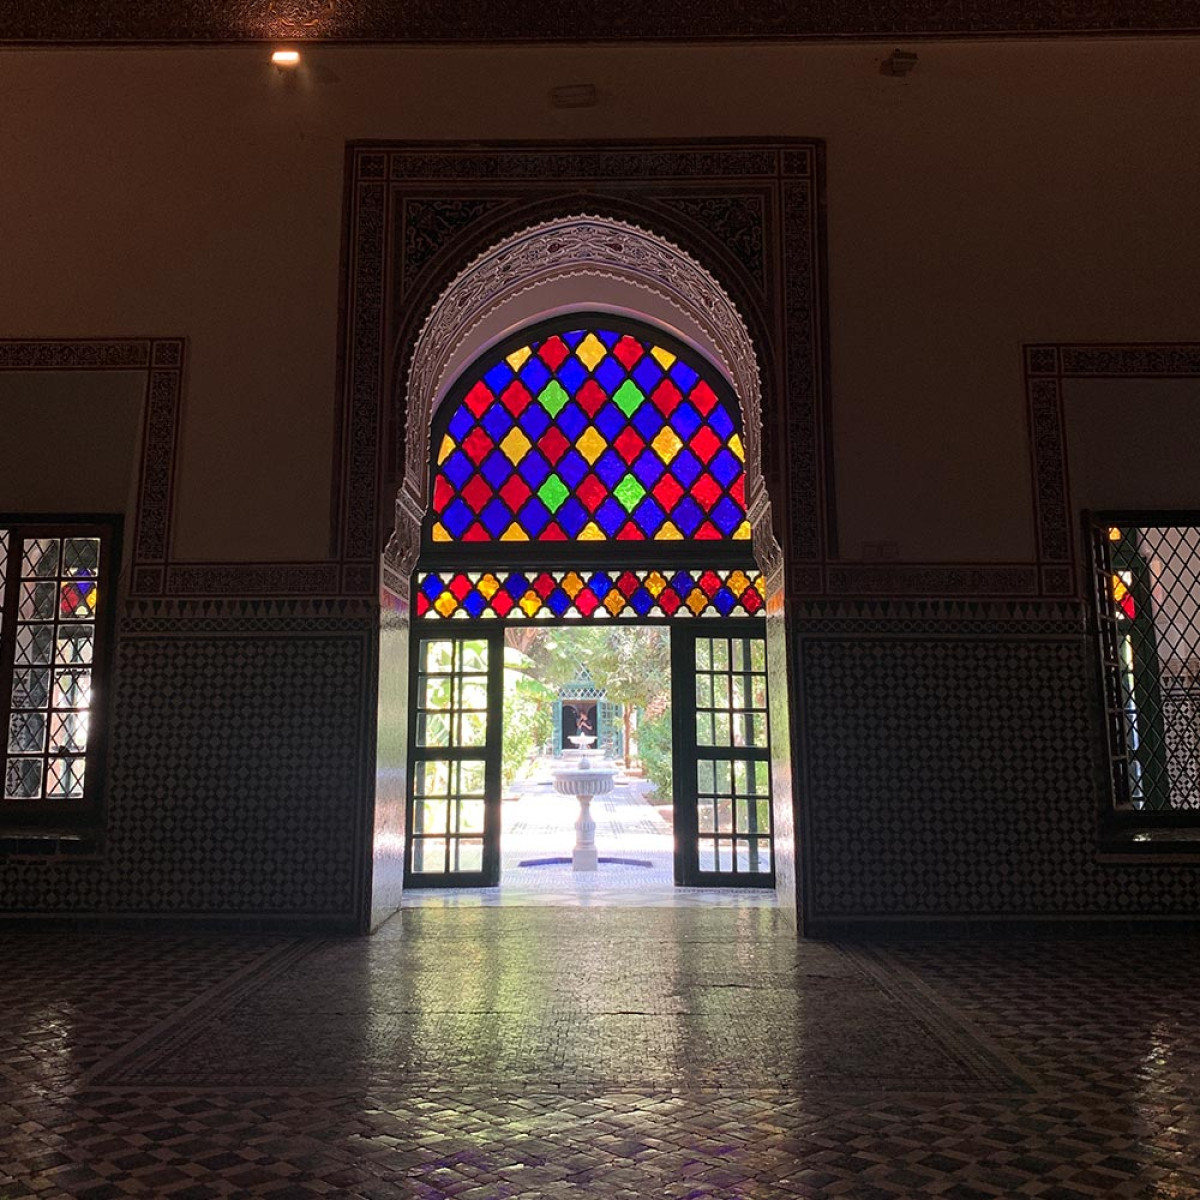 Beleef de geschiedenis van Marrakech